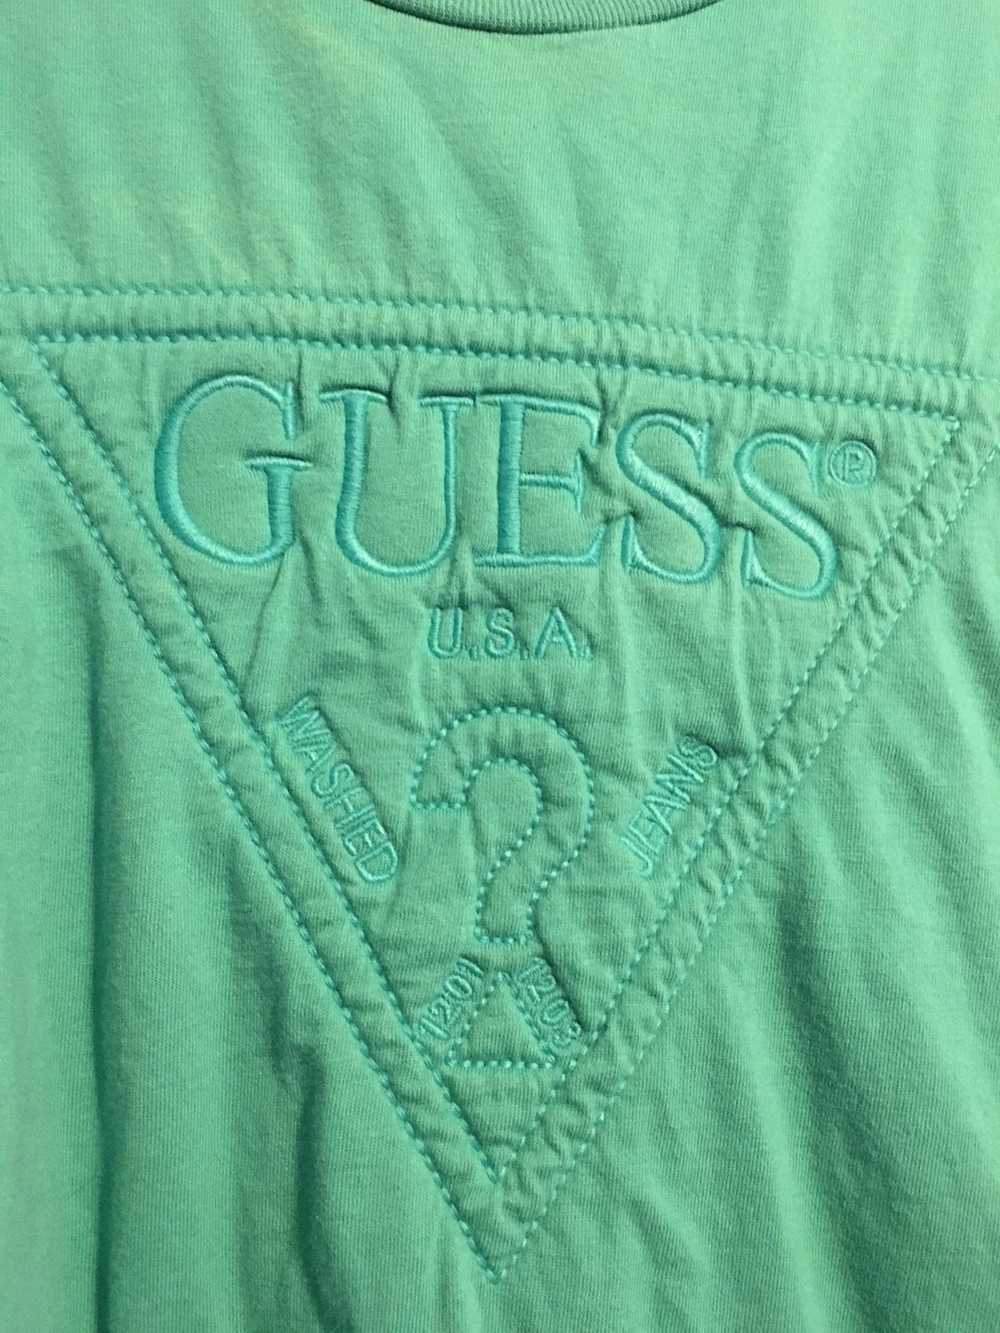 Guess Guess Short Sleeve Shirt - image 2